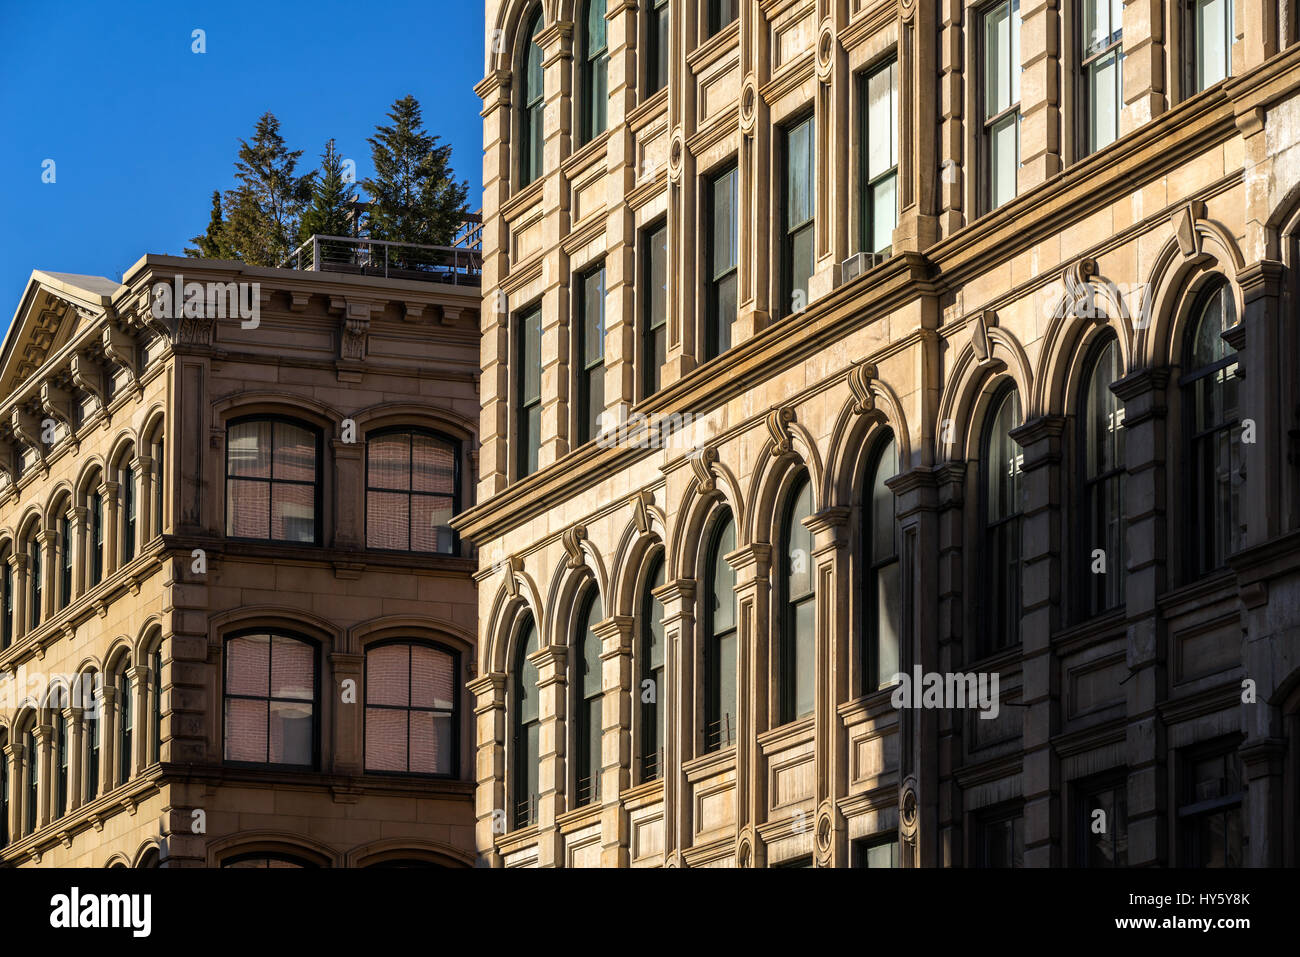 Façades typiques Soho avec l'ornementation et terrasses, Manhattan, New York City Banque D'Images